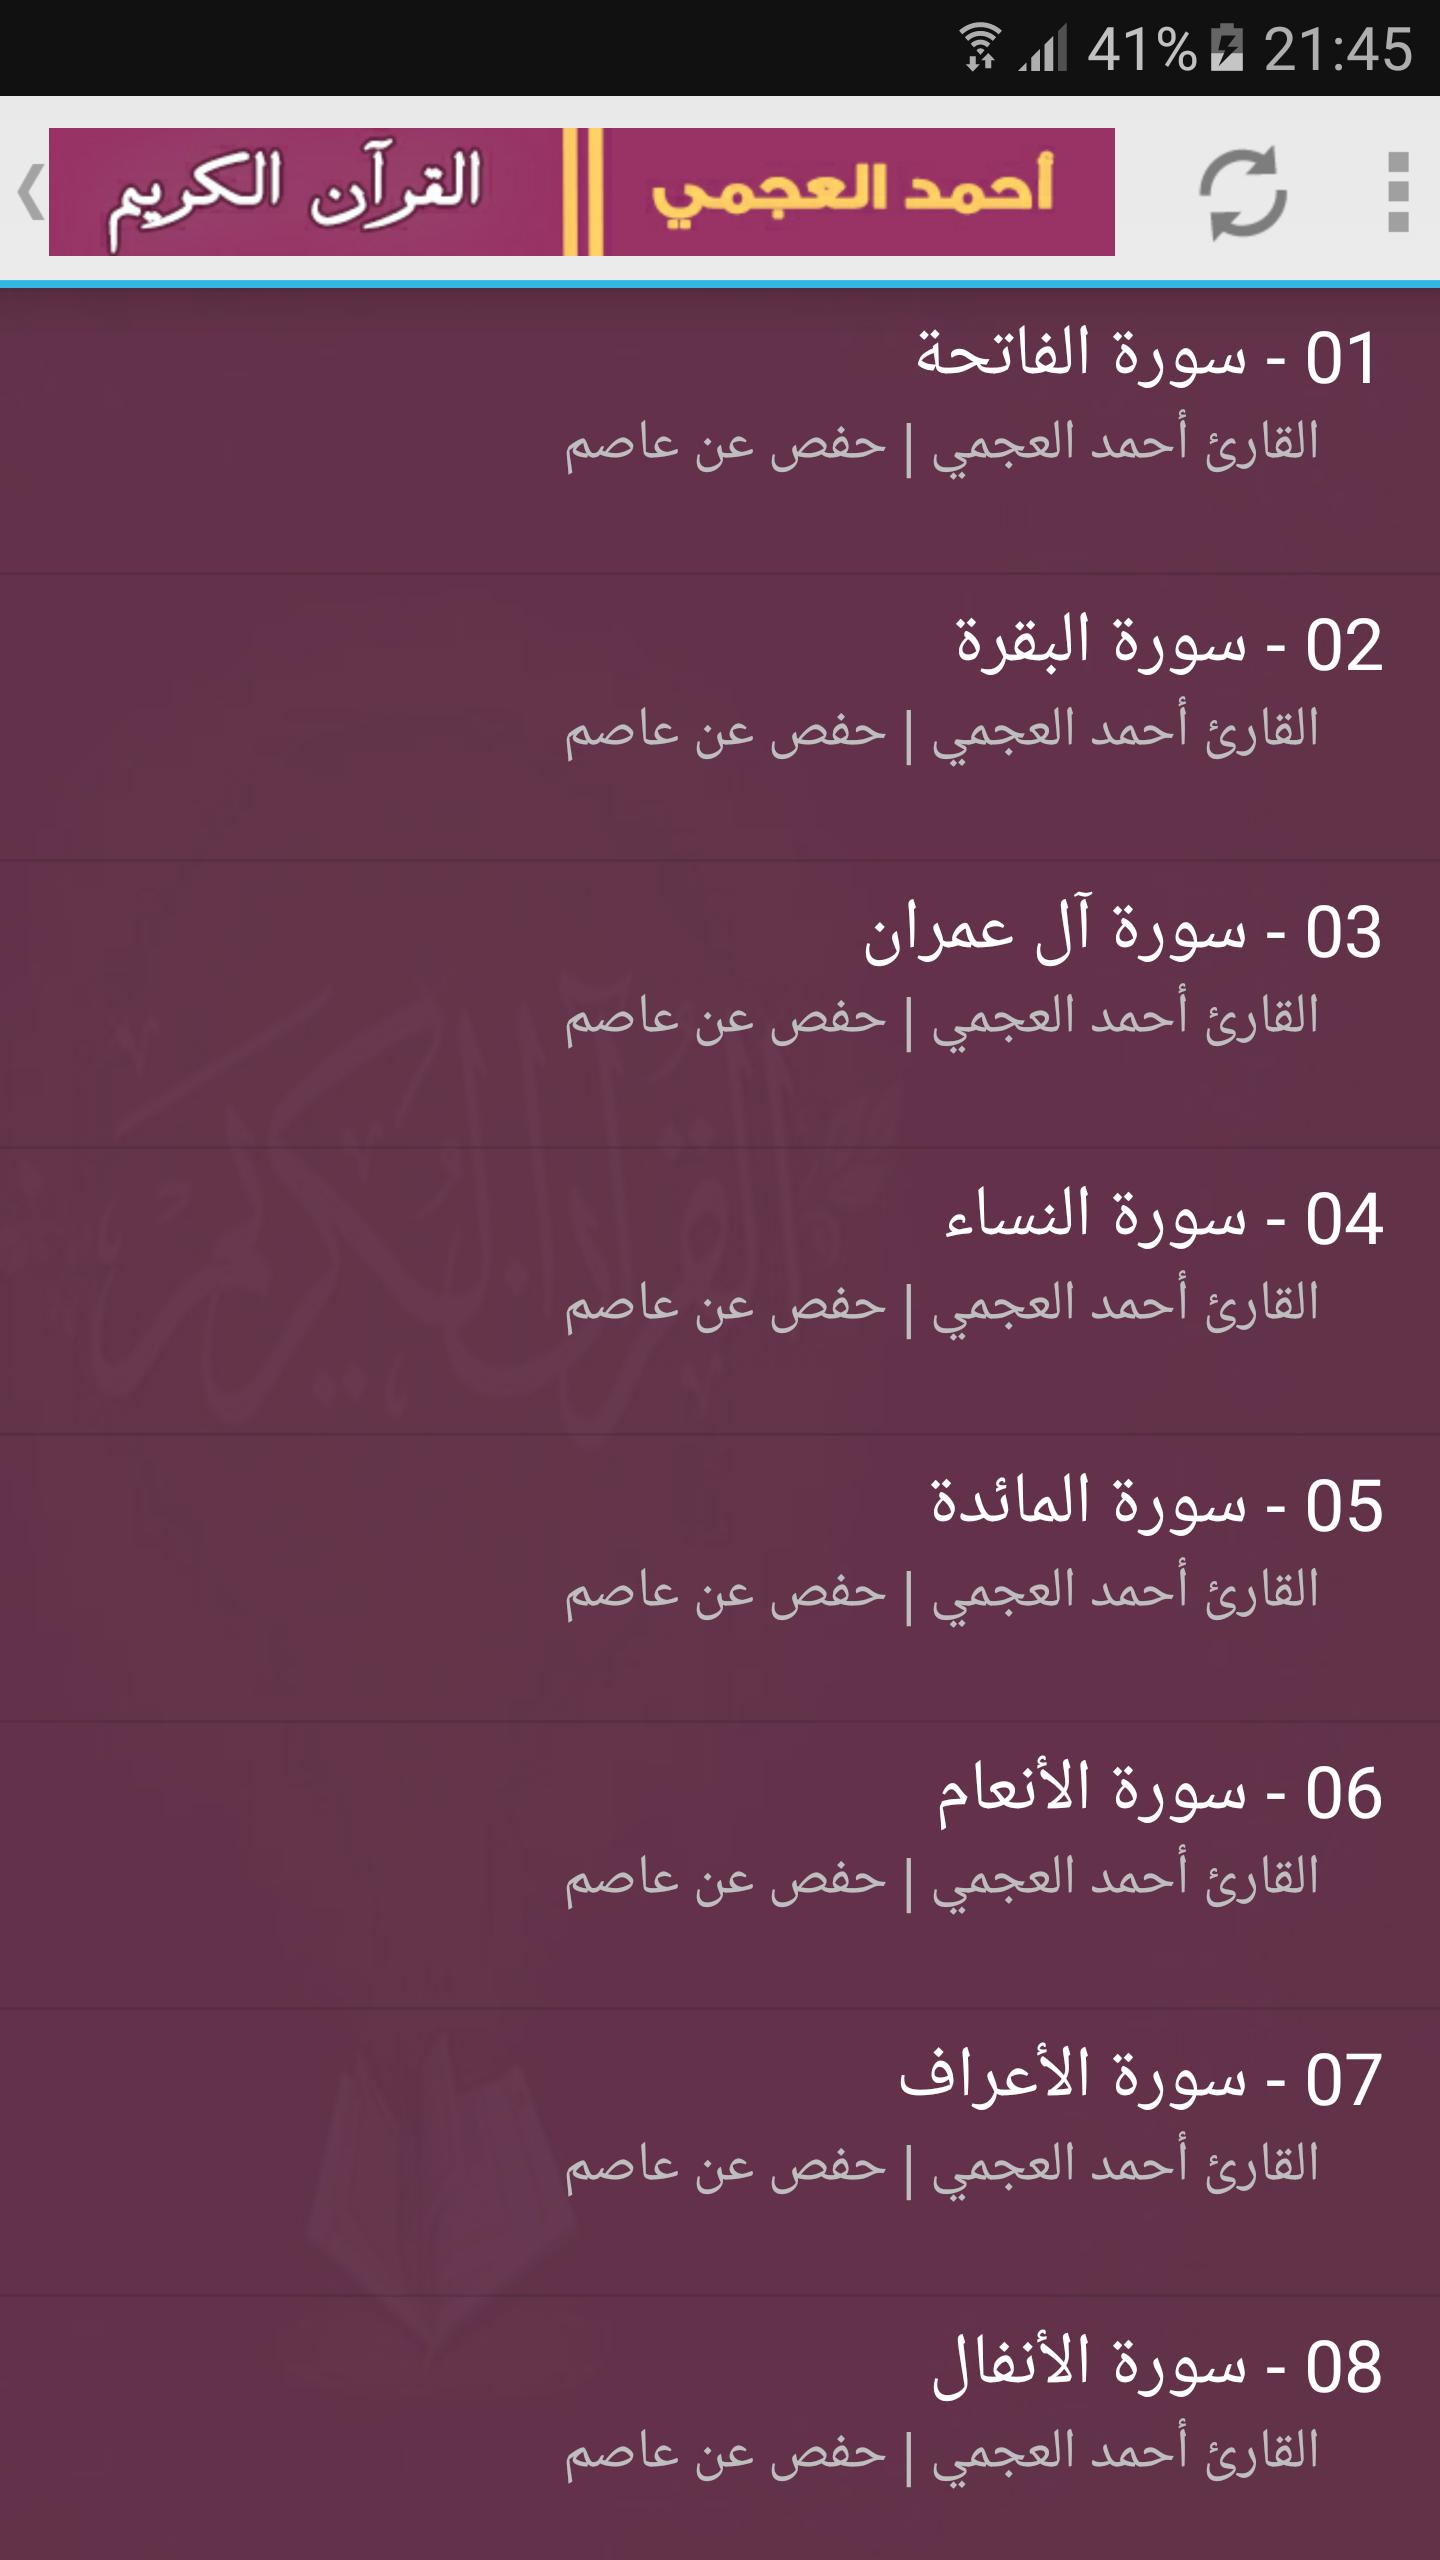 ahmad al ajmi Full Quran Mp3 for Android - APK Download